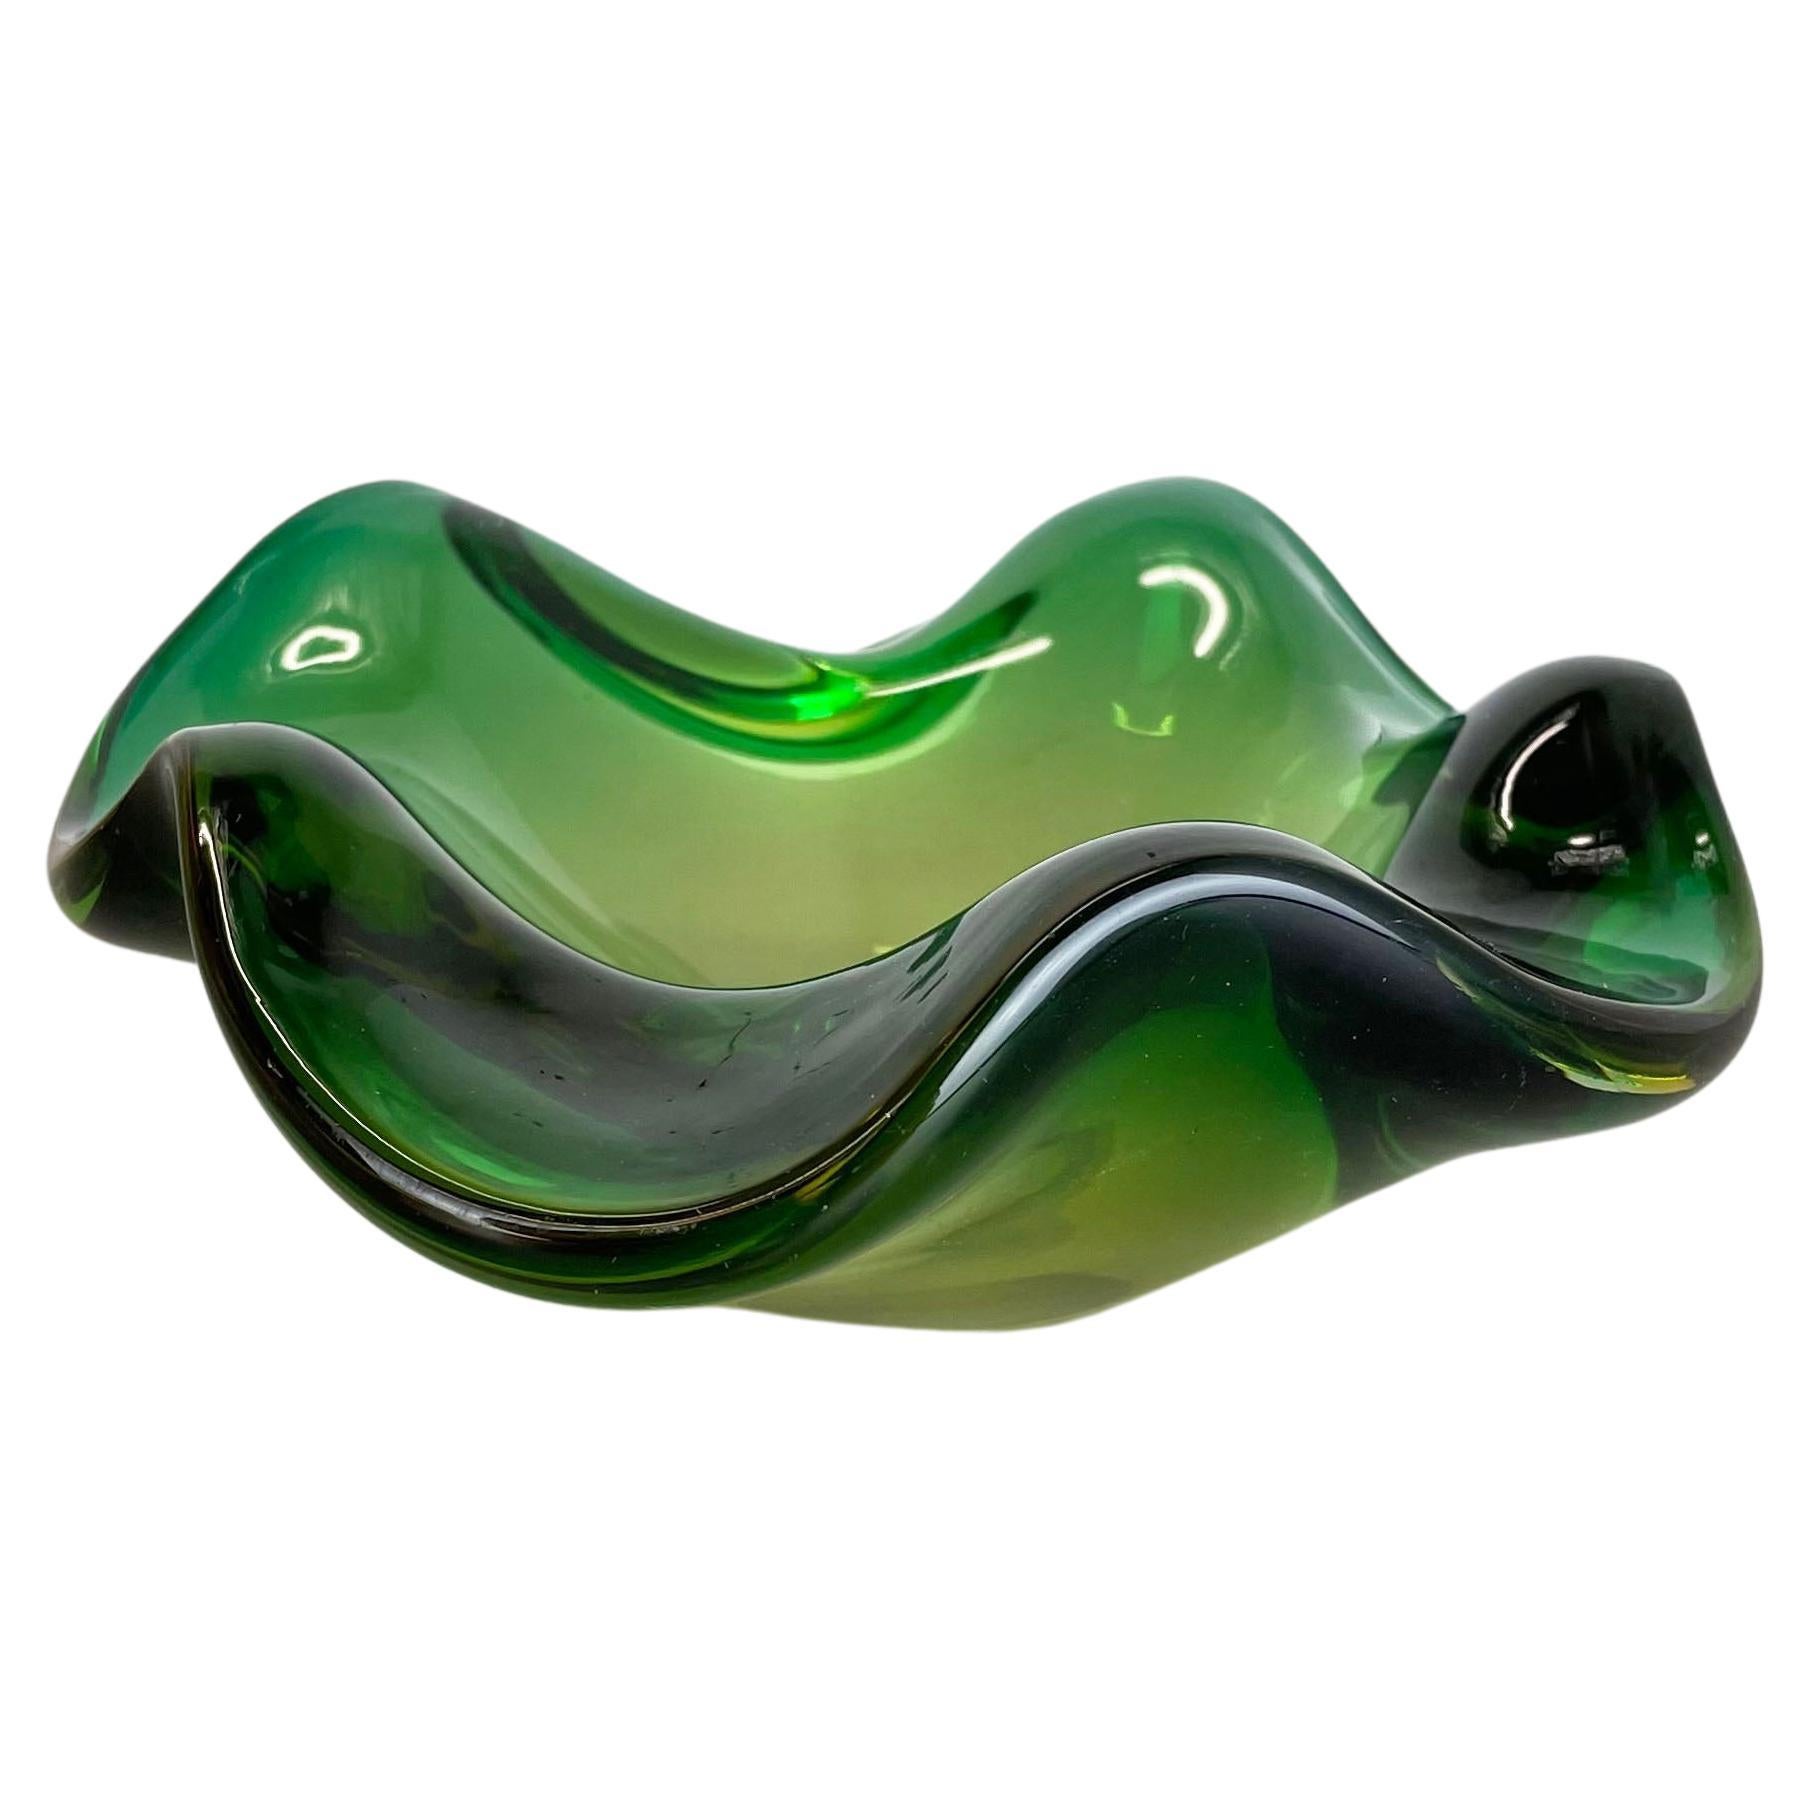 Heavy 1, 1kg Murano Glass "Green" Bowl Element Shell Ashtray Murano, Italy, 1970s